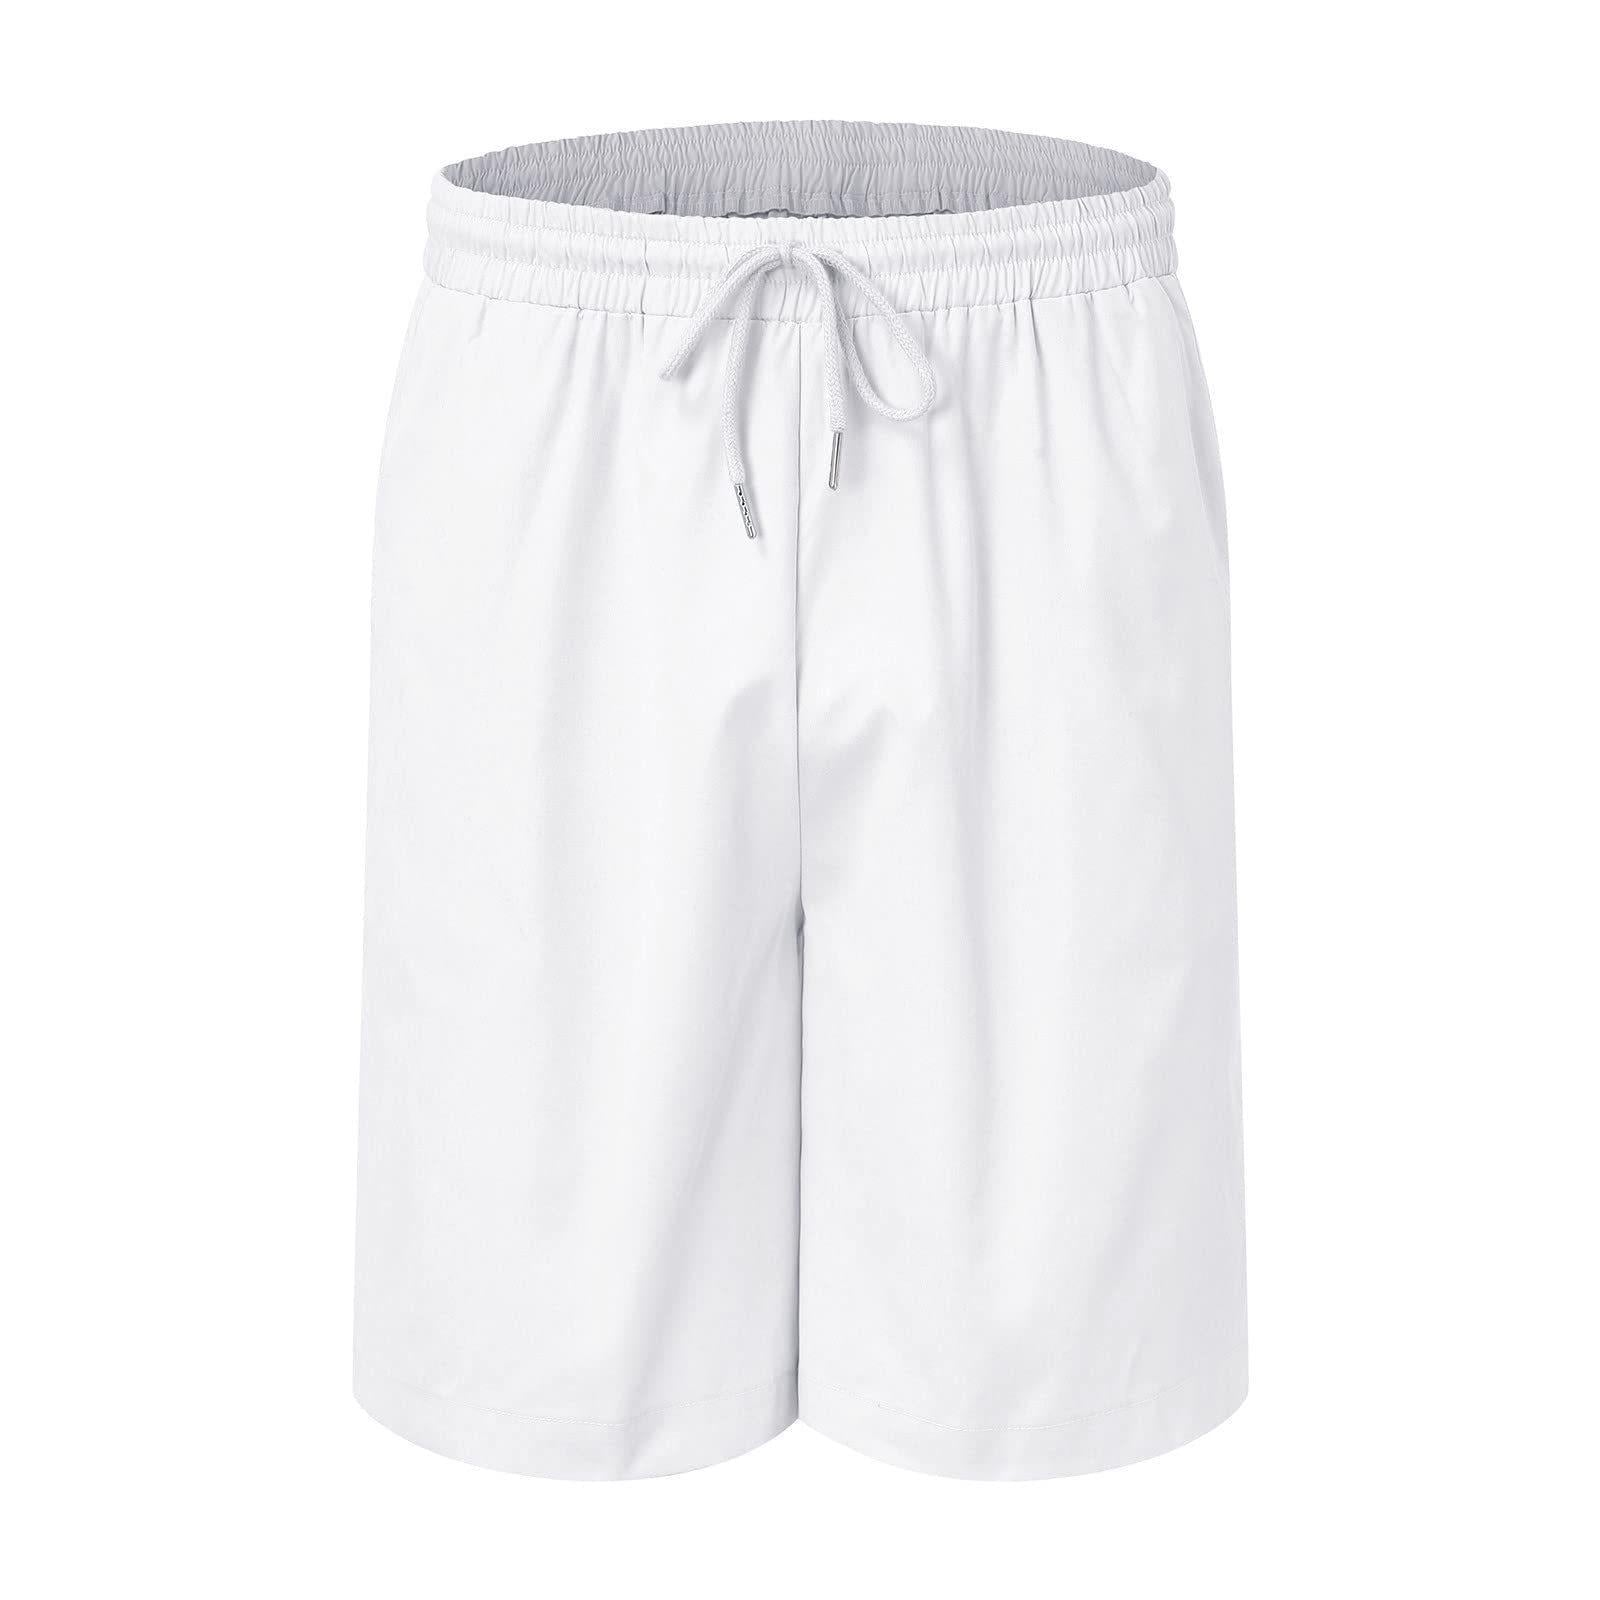 Linen Loose Short Sleeve Shorts Men's 2 PC Suit